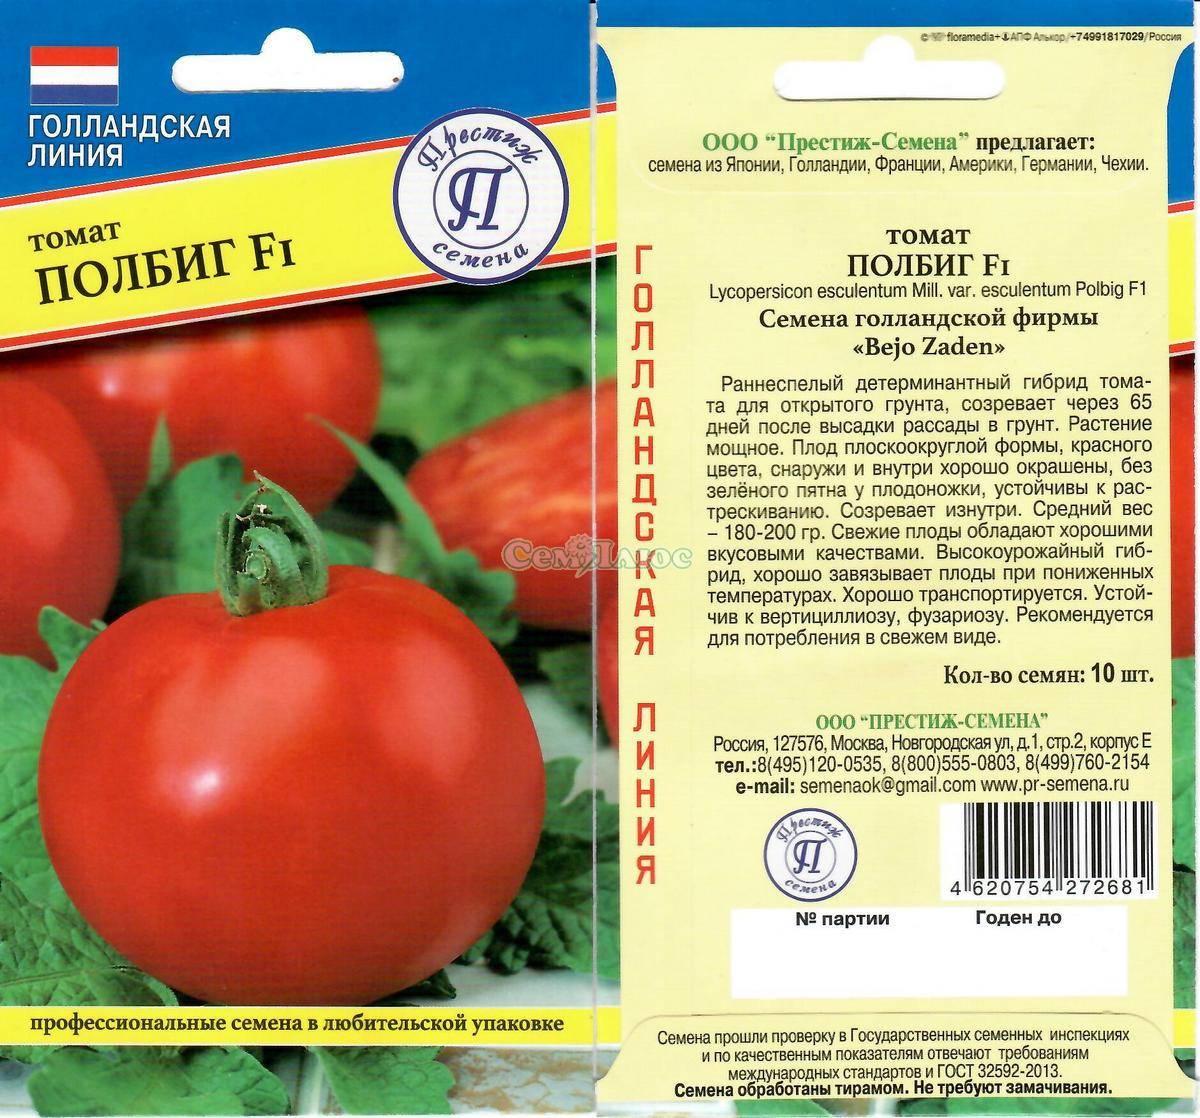 Томат полбиг (f1): характеристика и описание гибрида, фото кустов и помидоров, отзывы об урожайности от тех, кто их выращивал, нюансы ухода